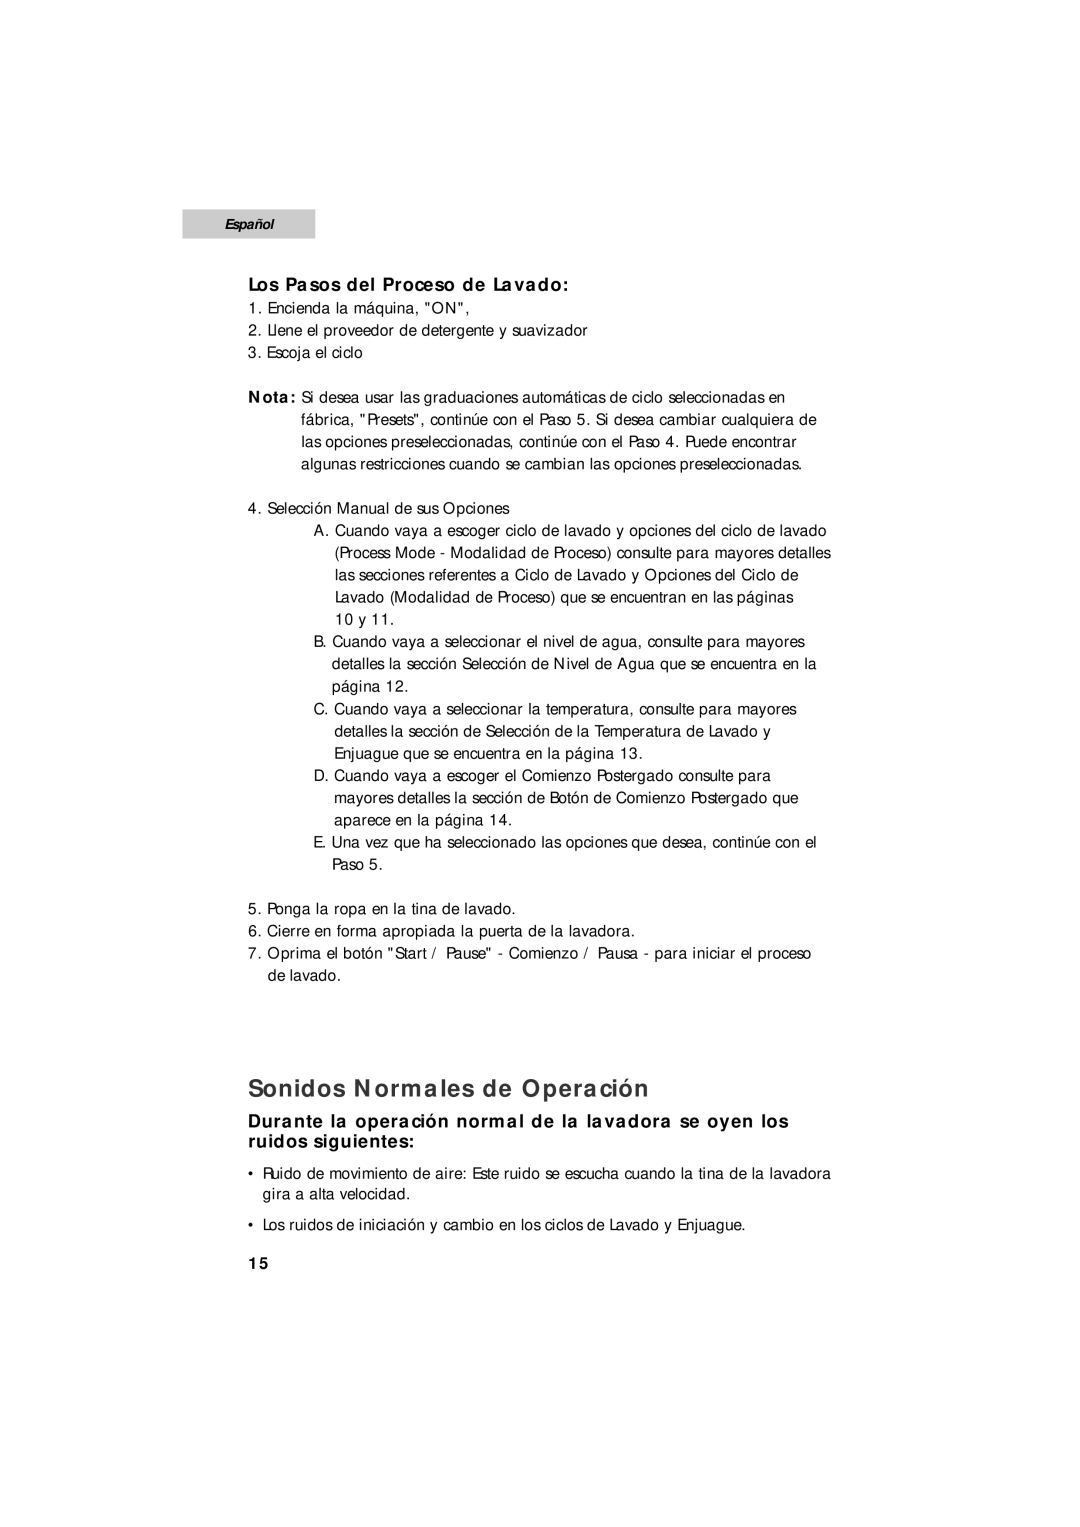 Summit SPW1200P user manual Sonidos Normales de Operación, Los Pasos del Proceso de Lavado, Español 